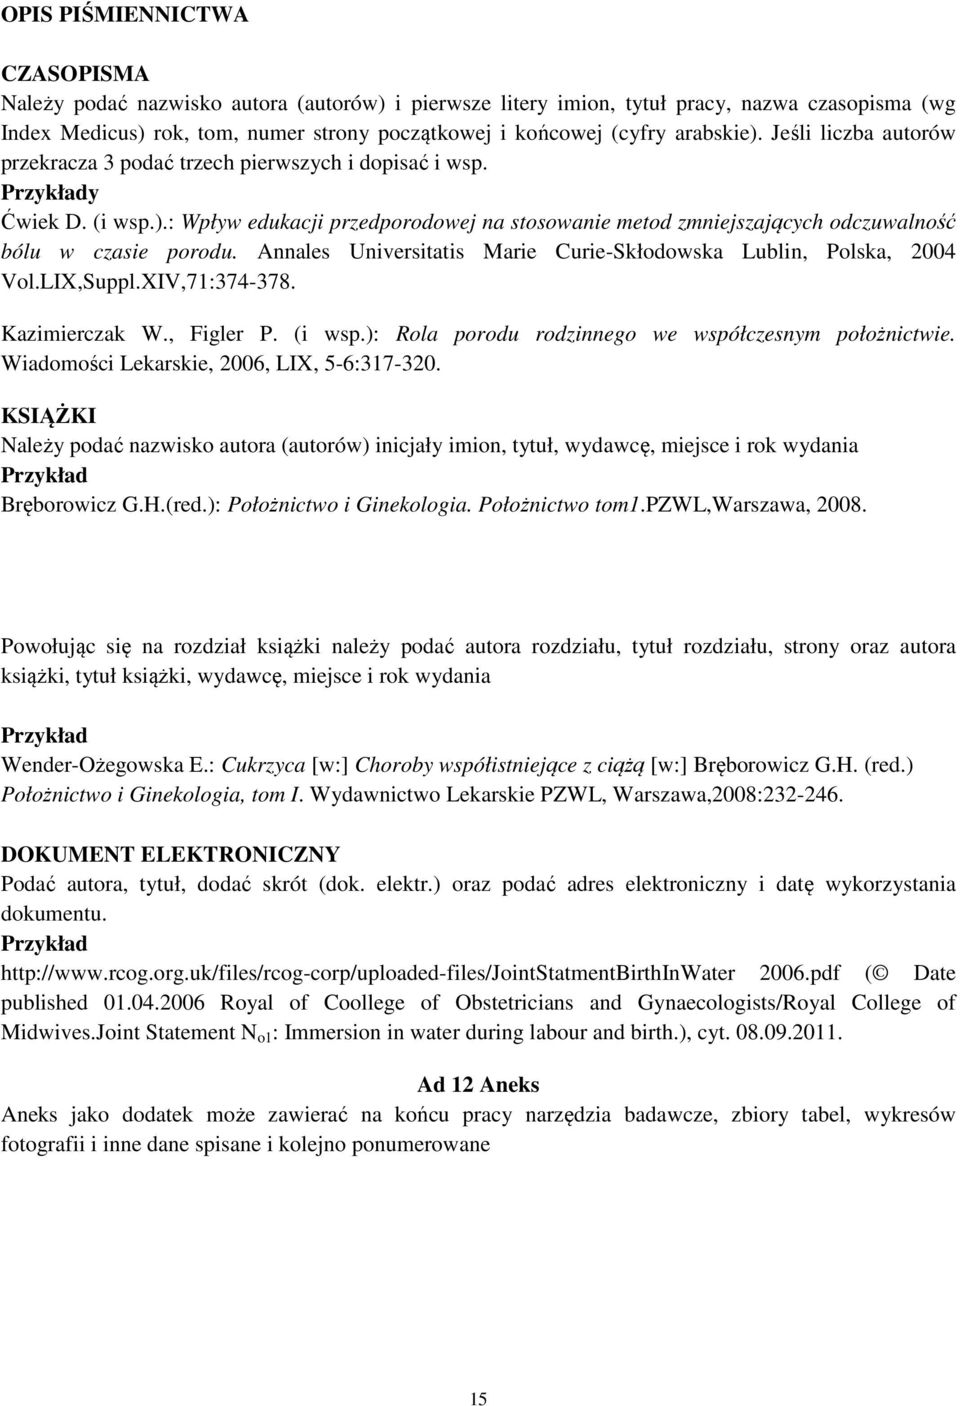 Annales Universitatis Marie Curie-Skłodowska Lublin, Polska, 2004 Vol.LIX,Suppl.XIV,71:374-378. Kazimierczak W., Figler P. (i wsp.): Rola porodu rodzinnego we współczesnym położnictwie.